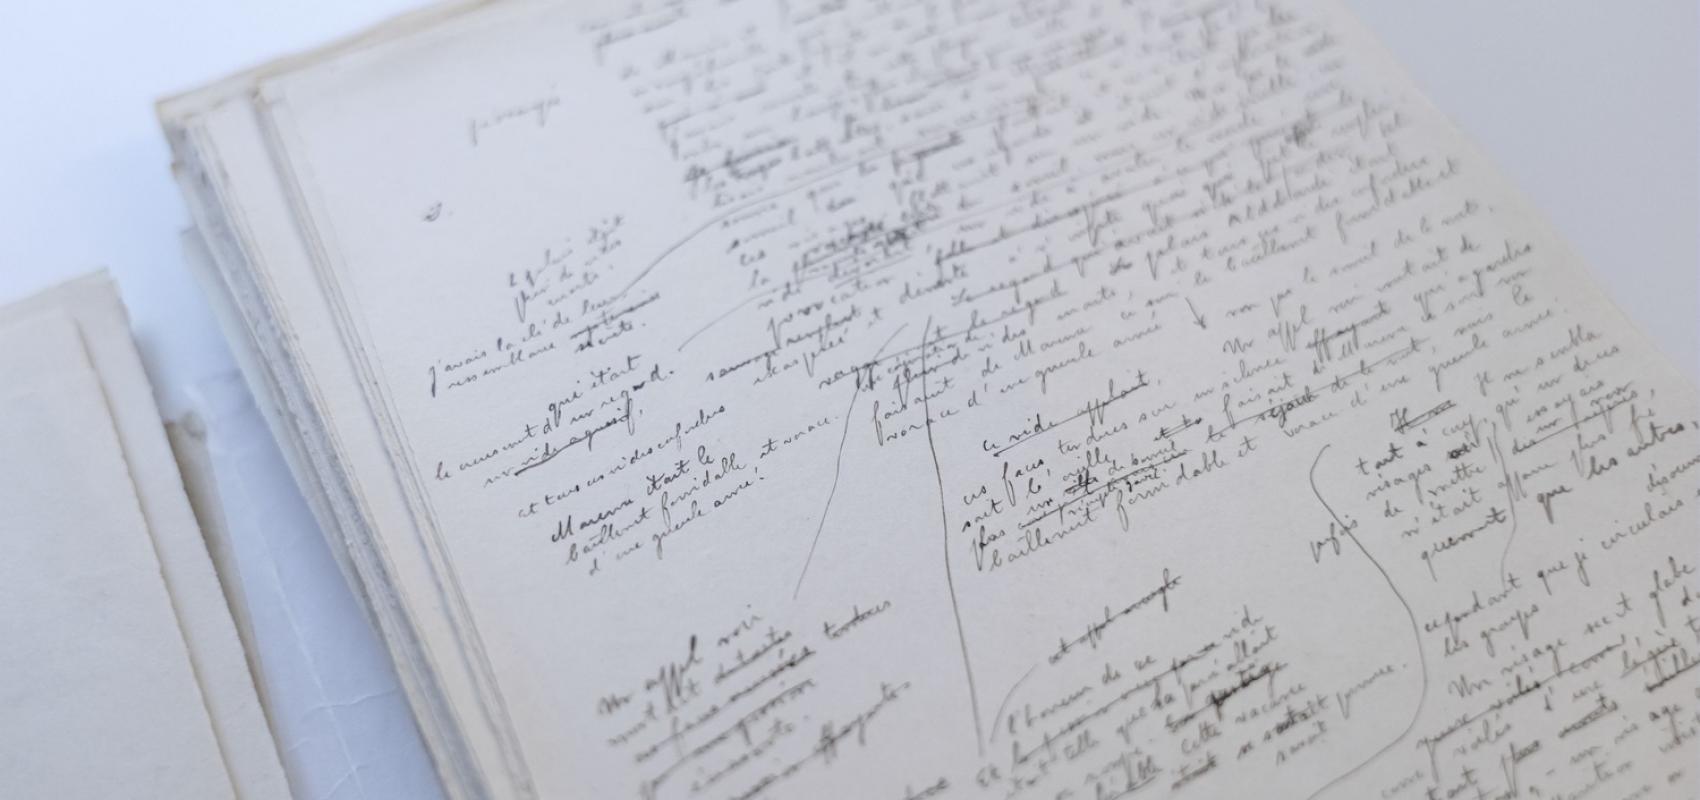 Julien Gracq, « Le Rivage des Syrtes », manuscrit autographe -  - BnF, département des Manuscrits. Photo Elie Ludwig